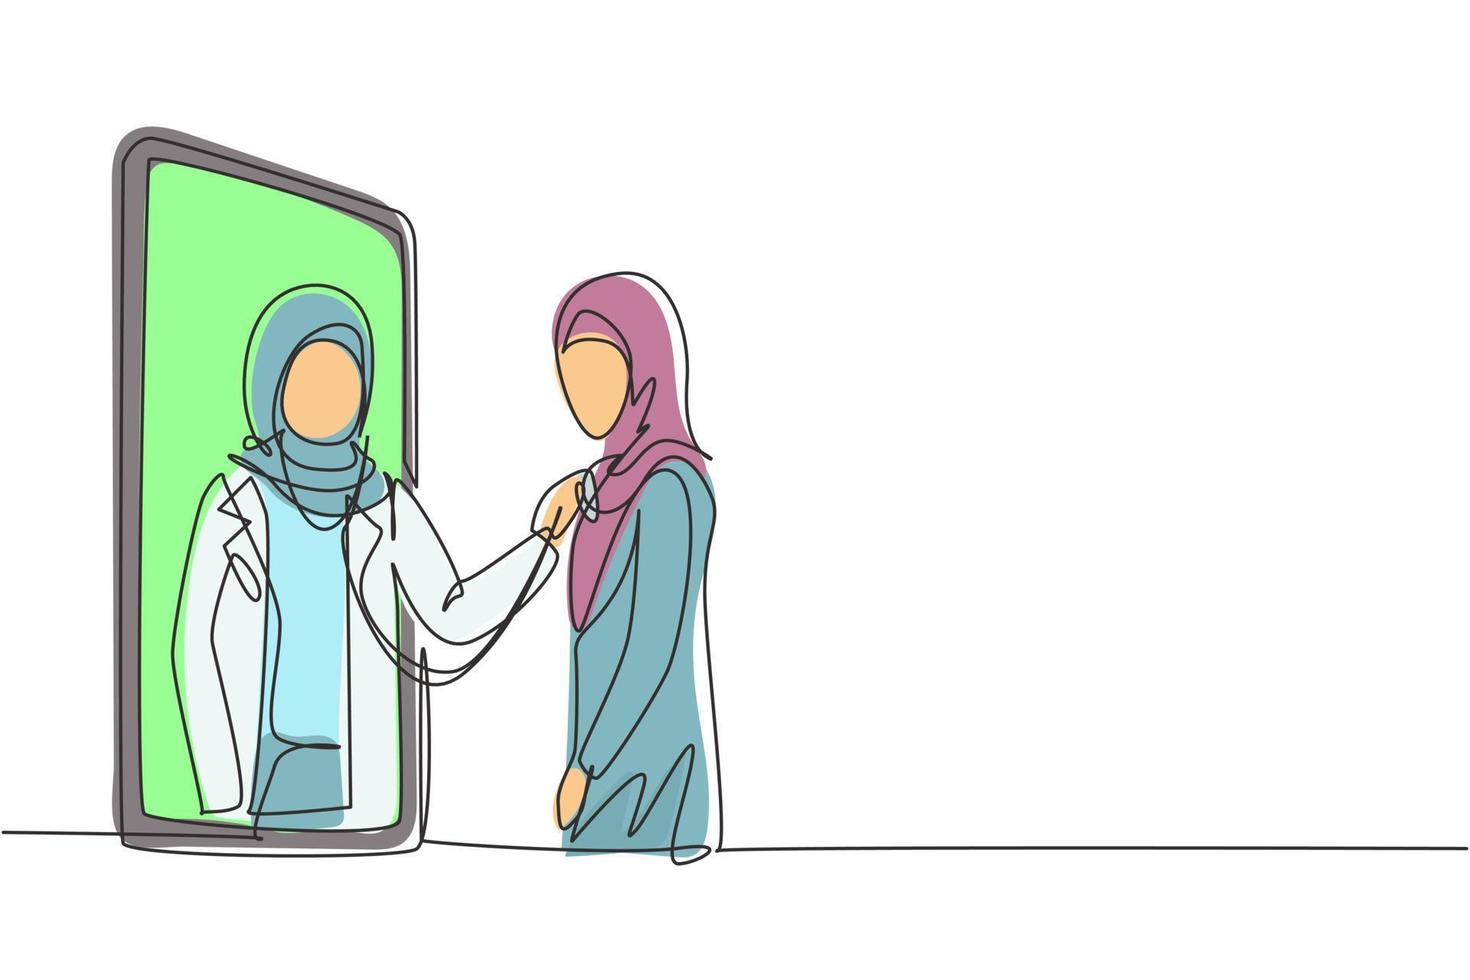 enda kontinuerlig linjeritning hijab kvinnlig läkare kommer ut från smartphones skärm och kontrollerar kvinnliga patientens hjärtfrekvens med hjälp av ett stetoskop. dynamisk en rad rita grafisk design vektorillustration vektor